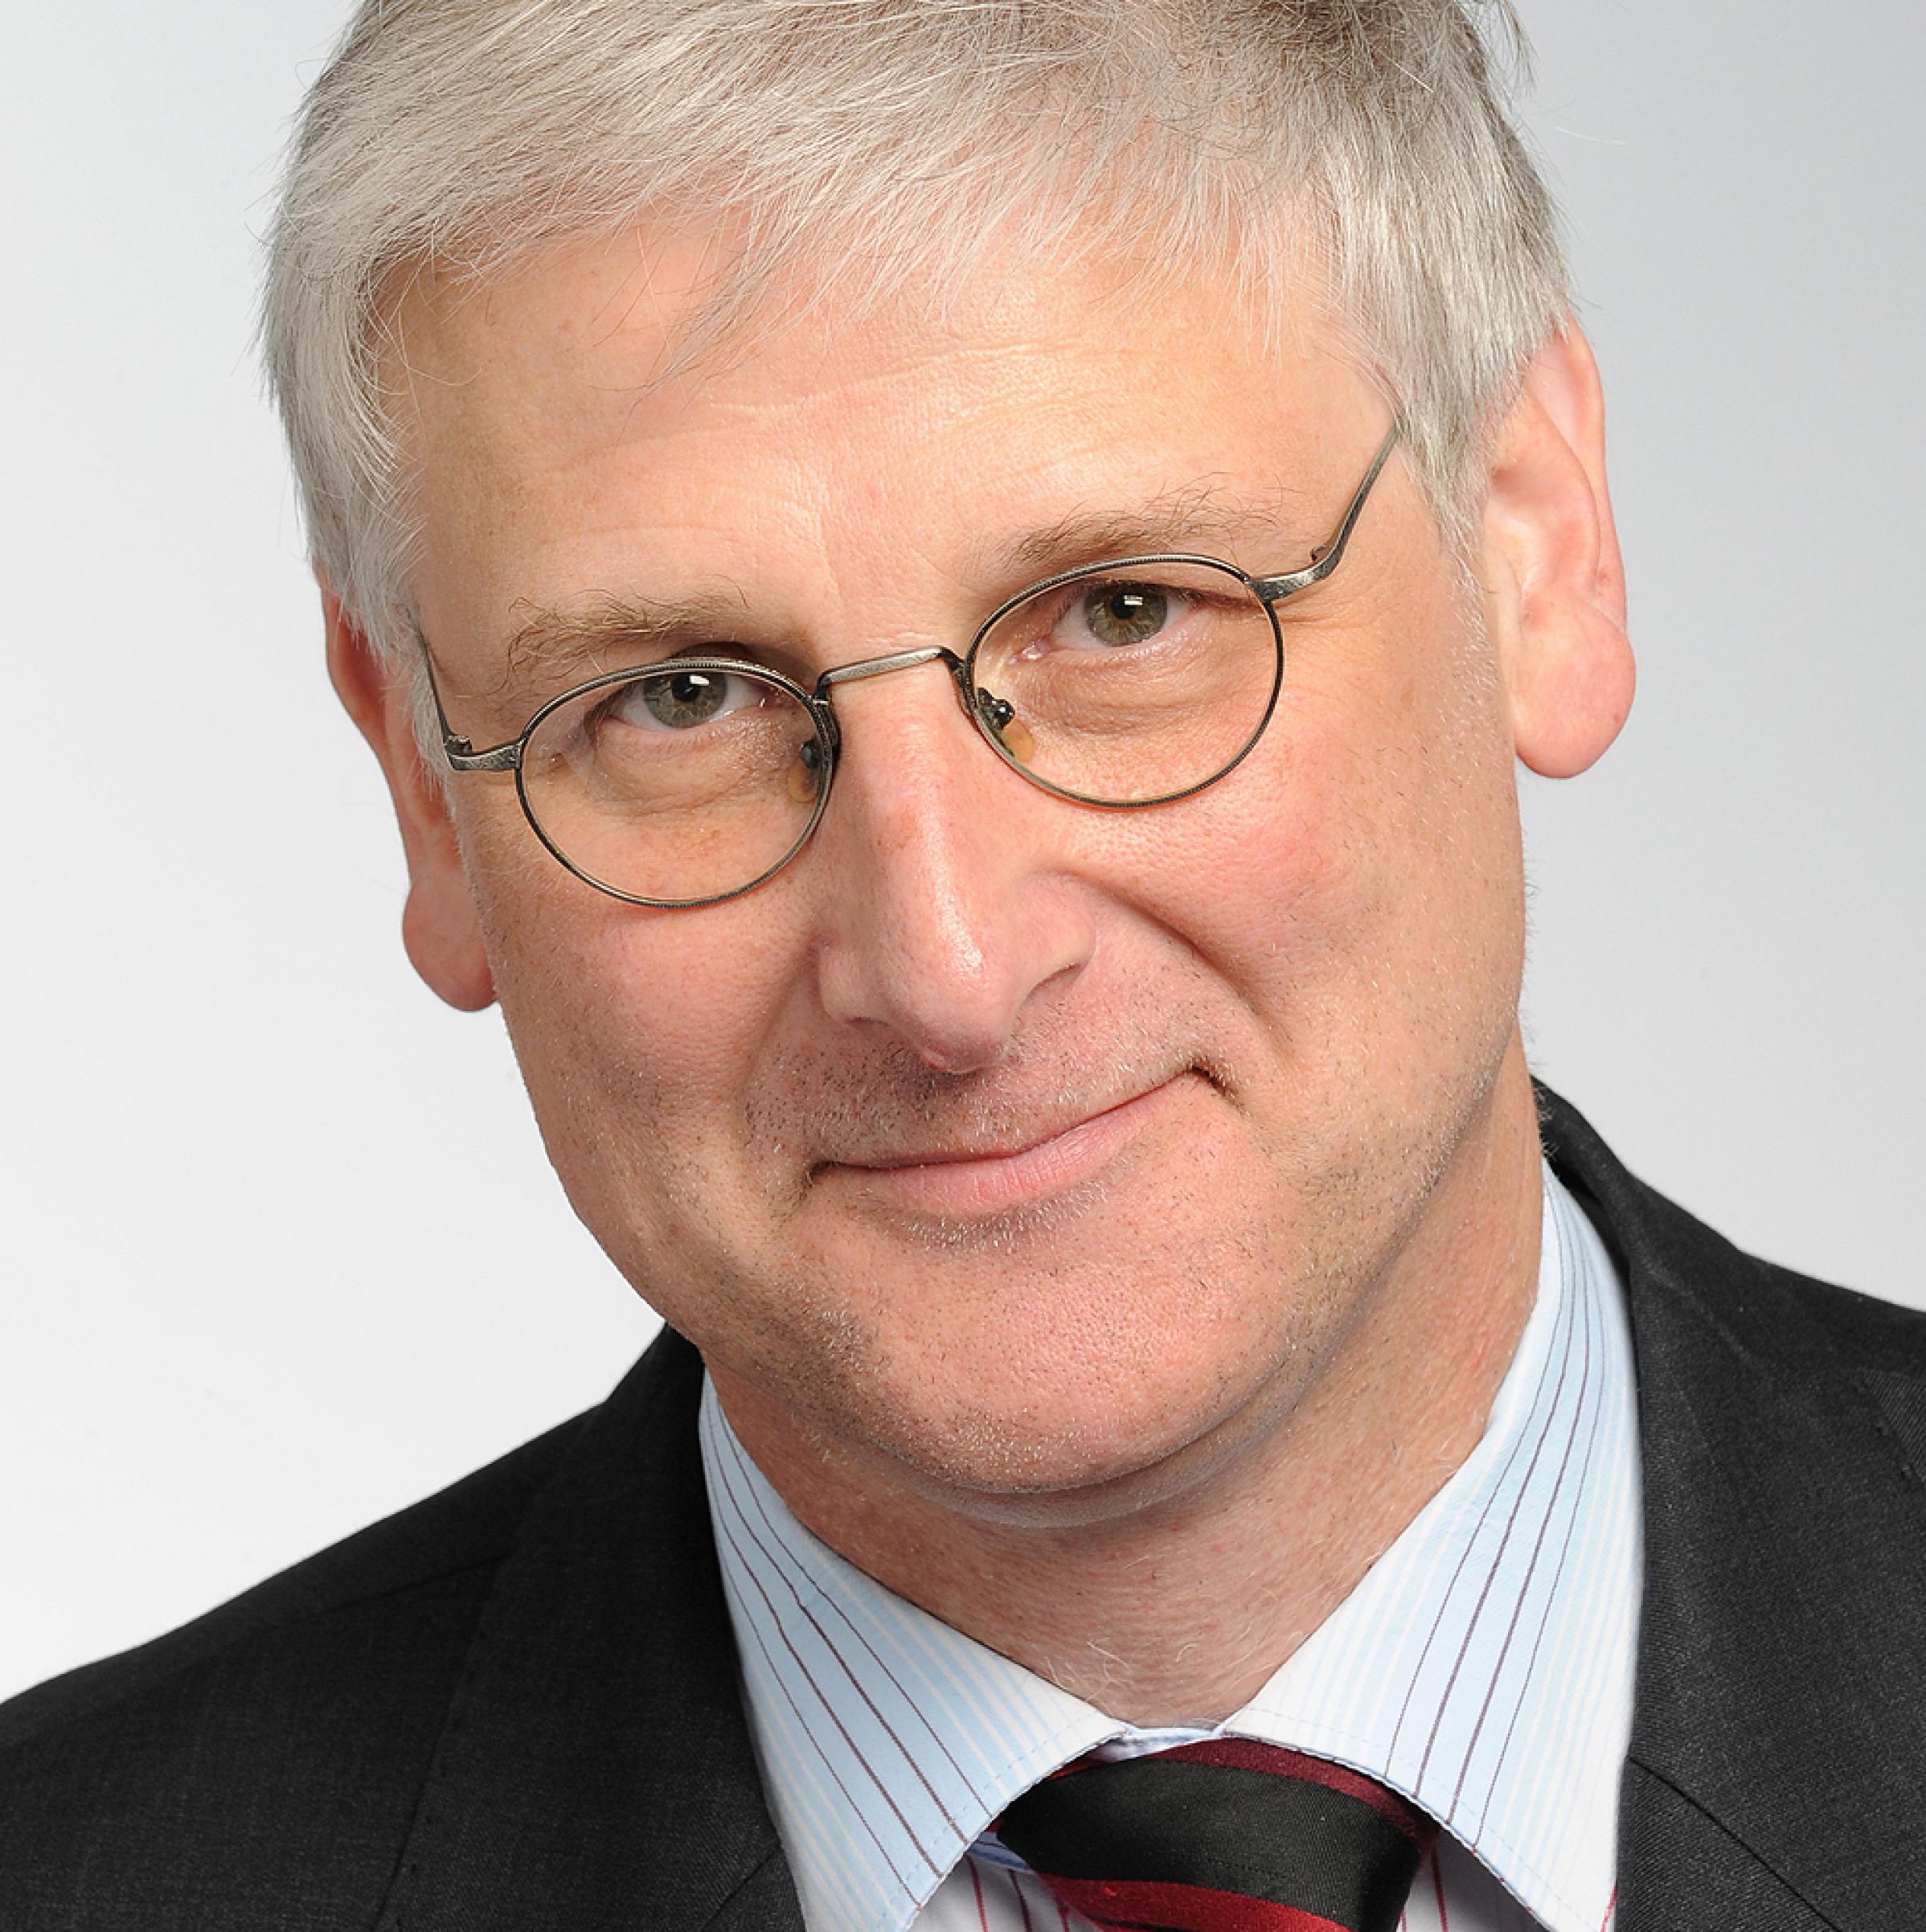 Ein älterer Mann mit Brille und grauen, kurzen Haaren.